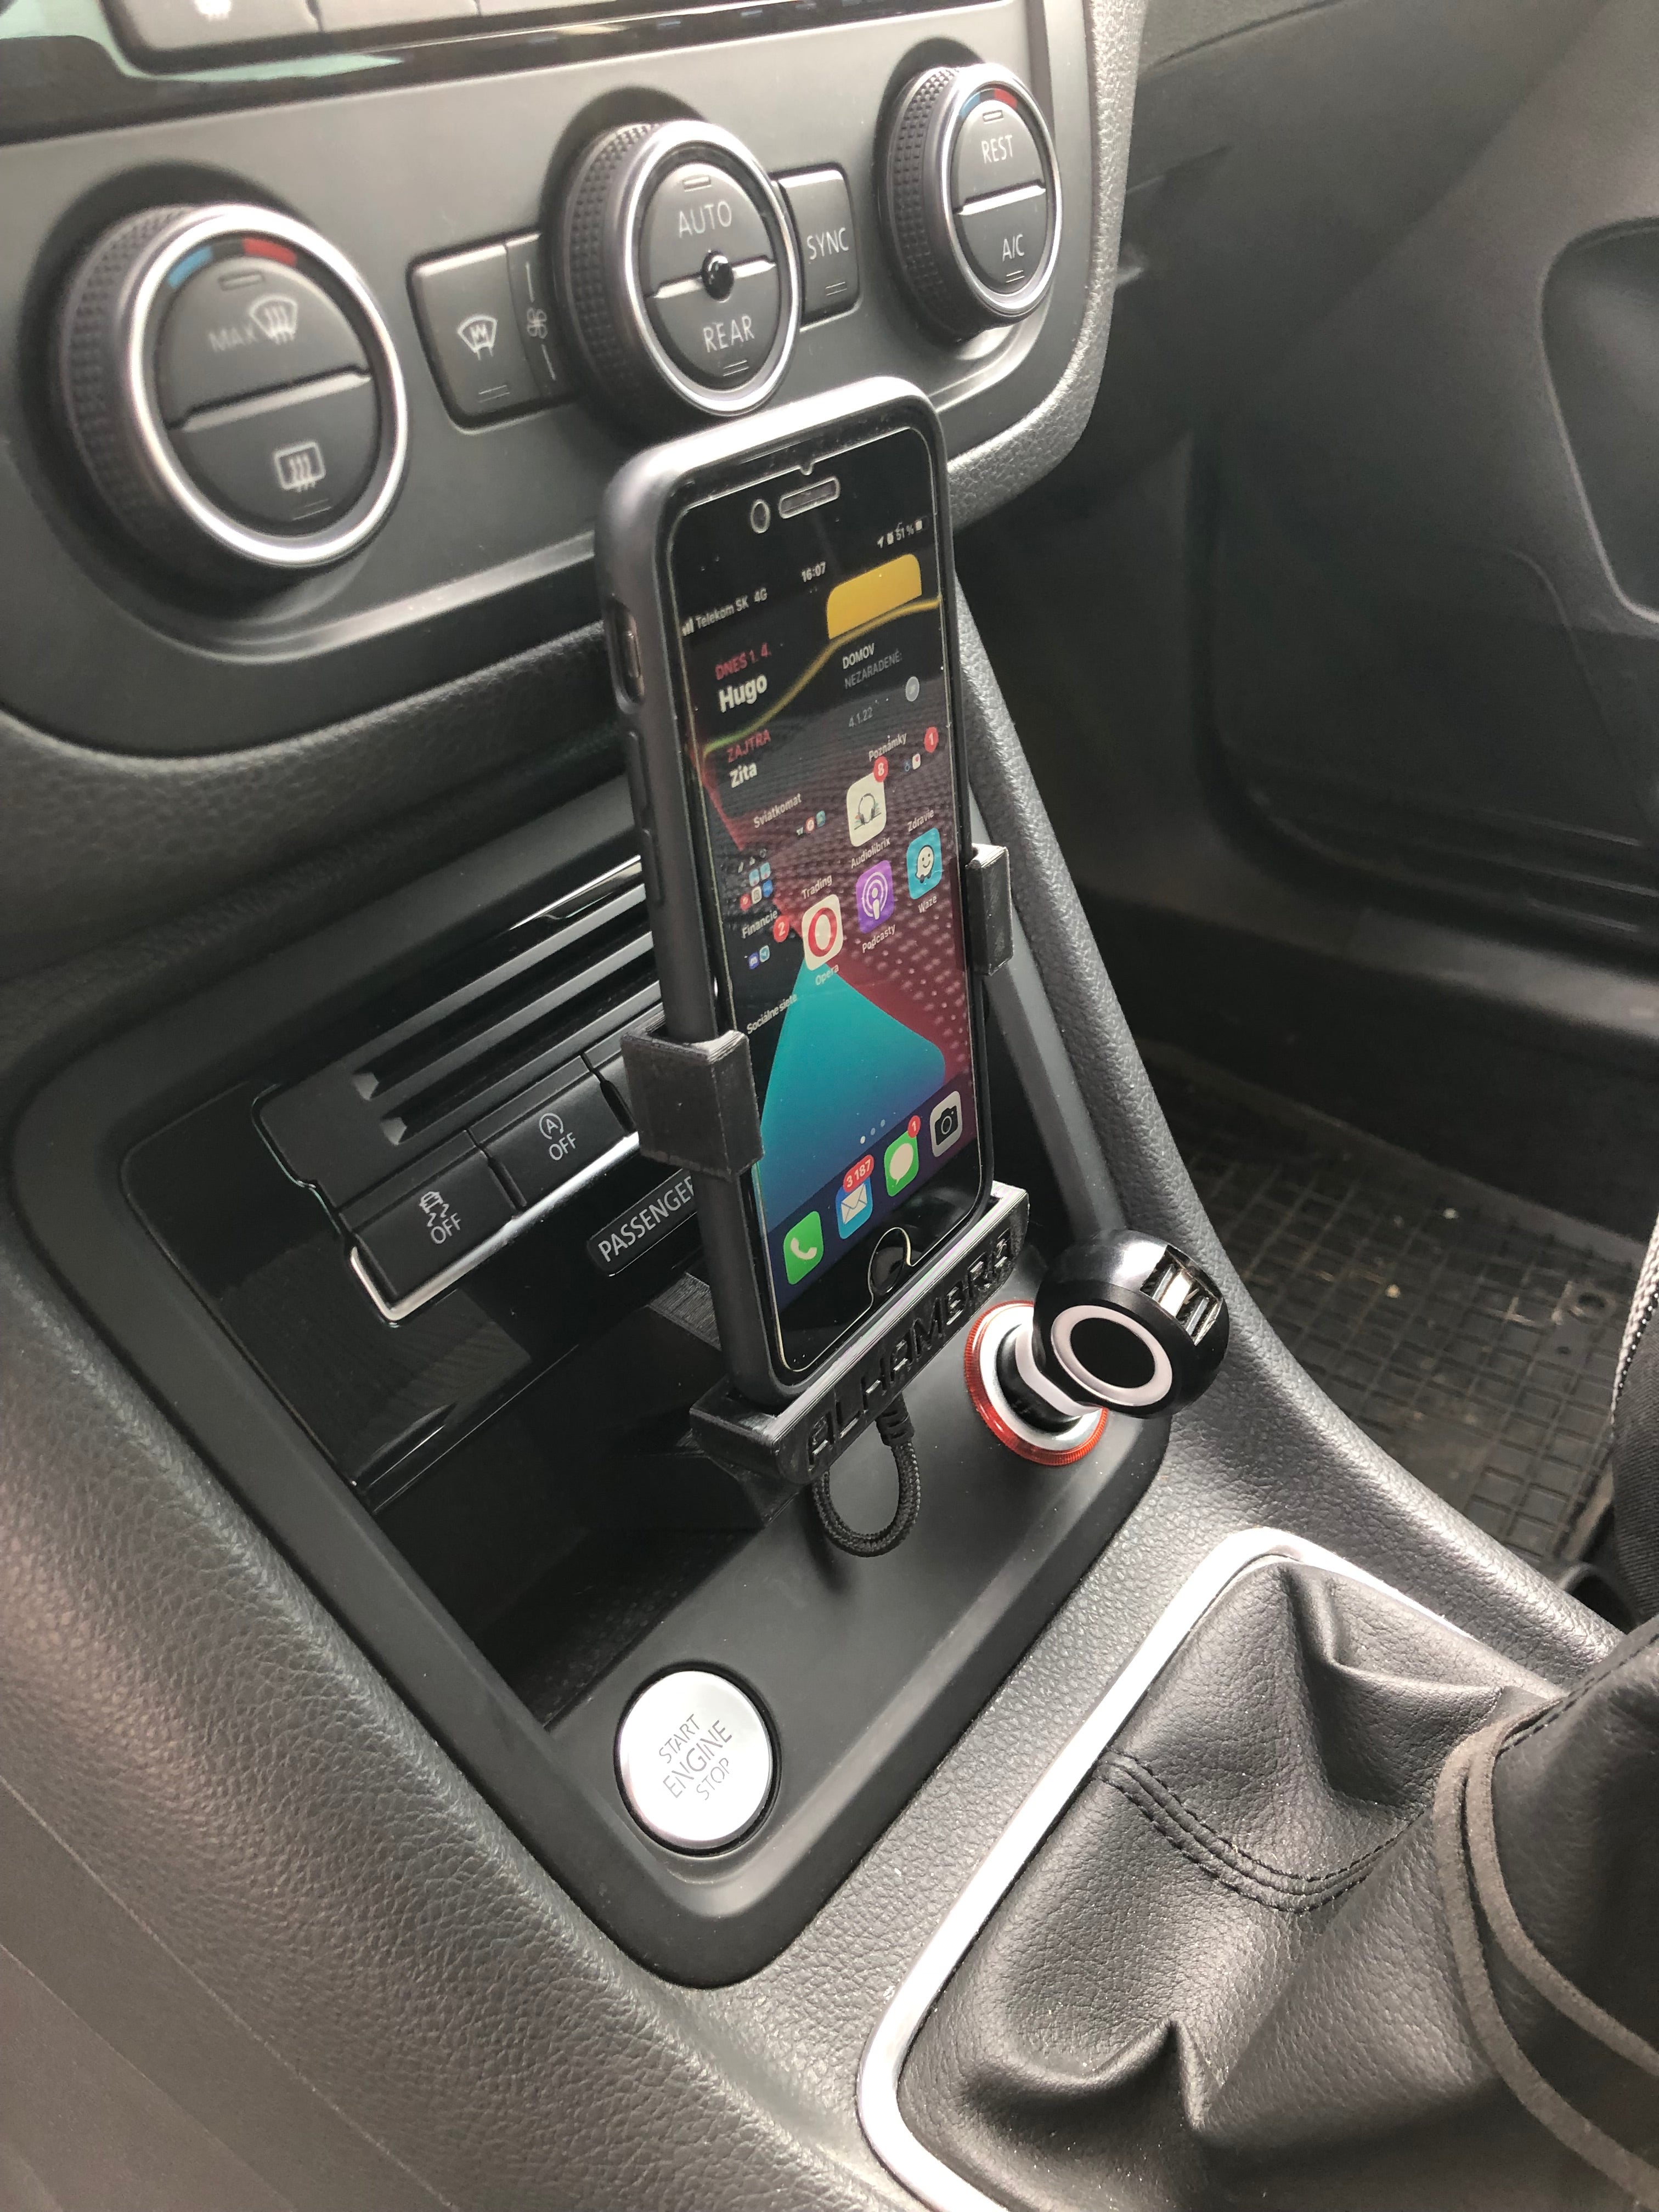 Supporto auto docking aggiornato per iPhone8 a SEAT FullLink Ver 2.0